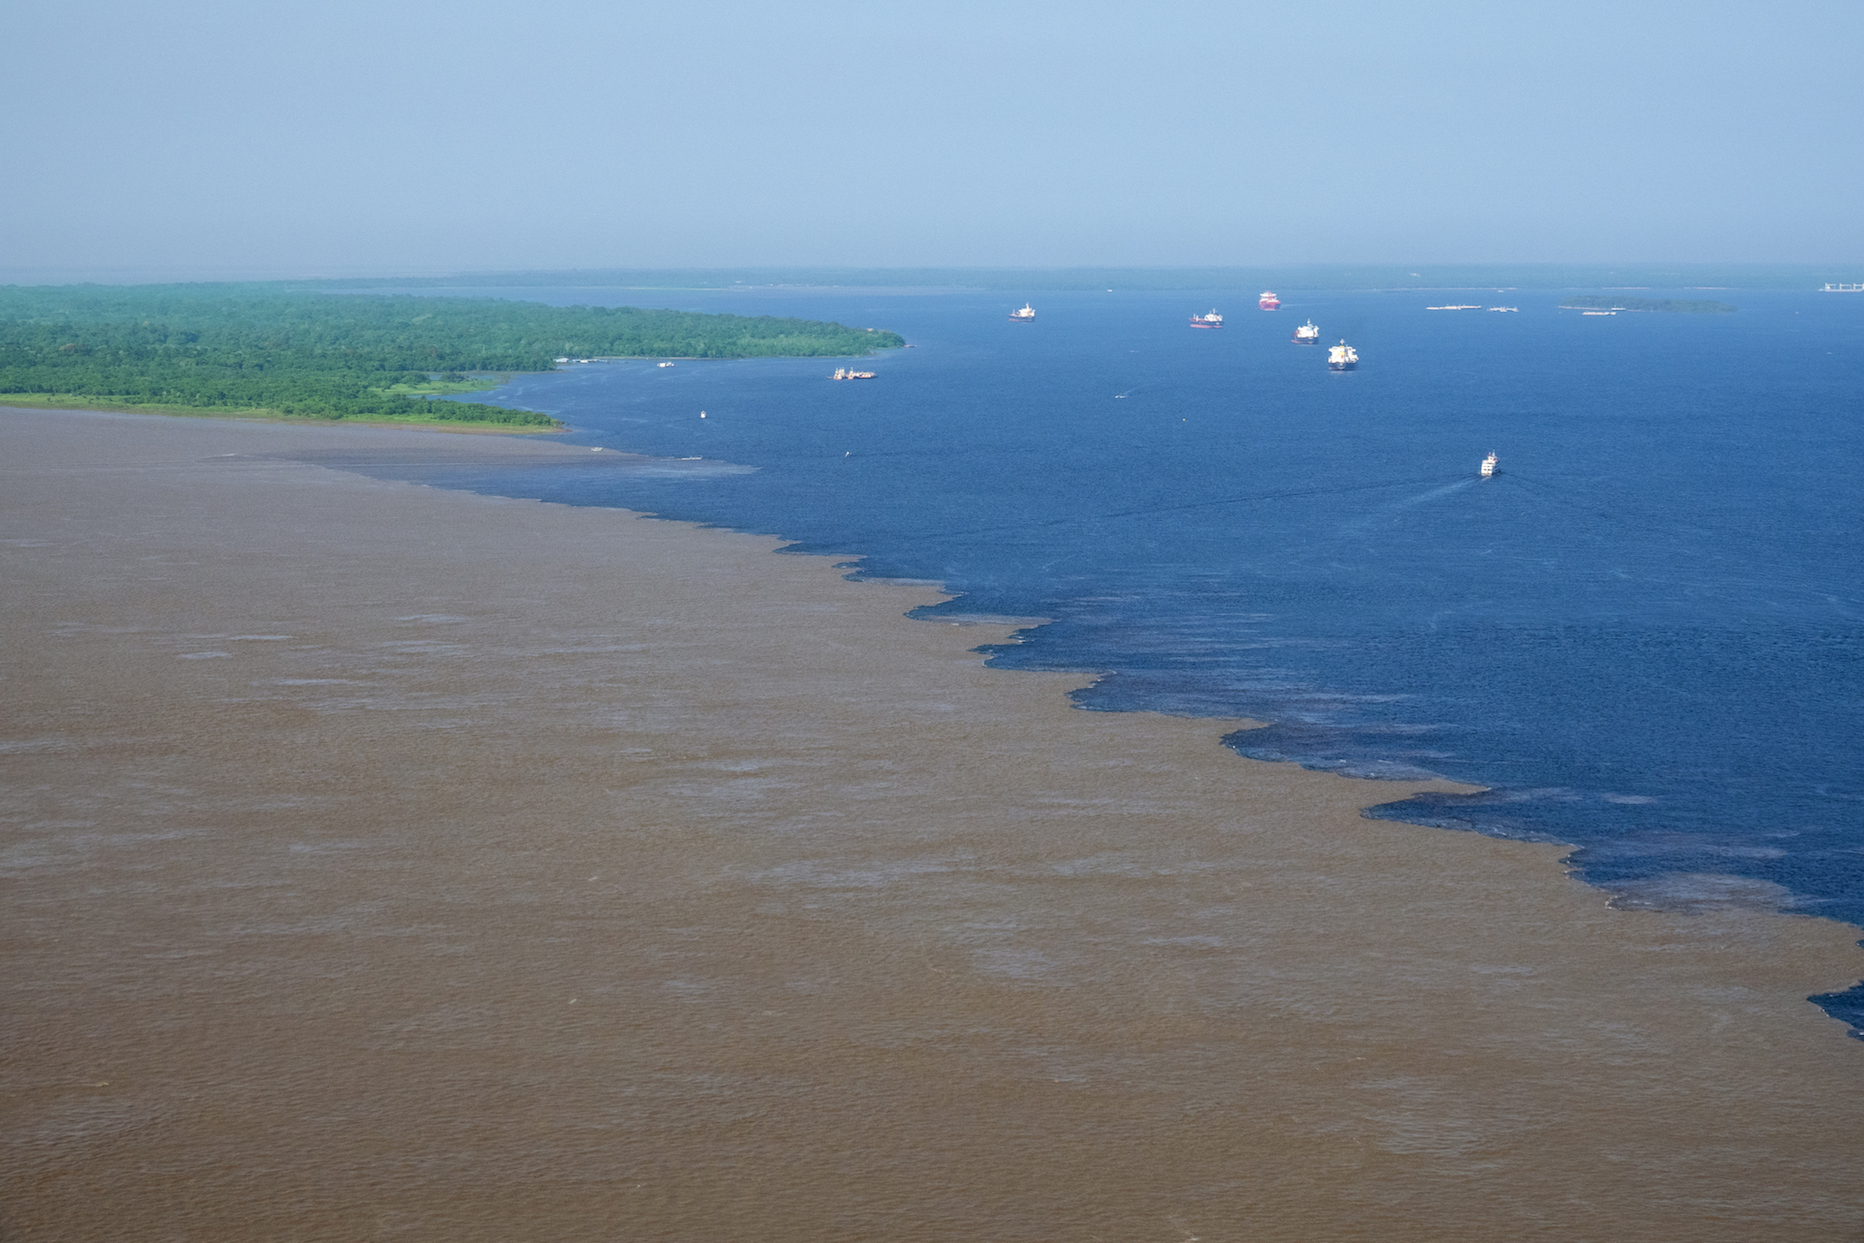 Rio Negro and Rio Solimoes in Brazil